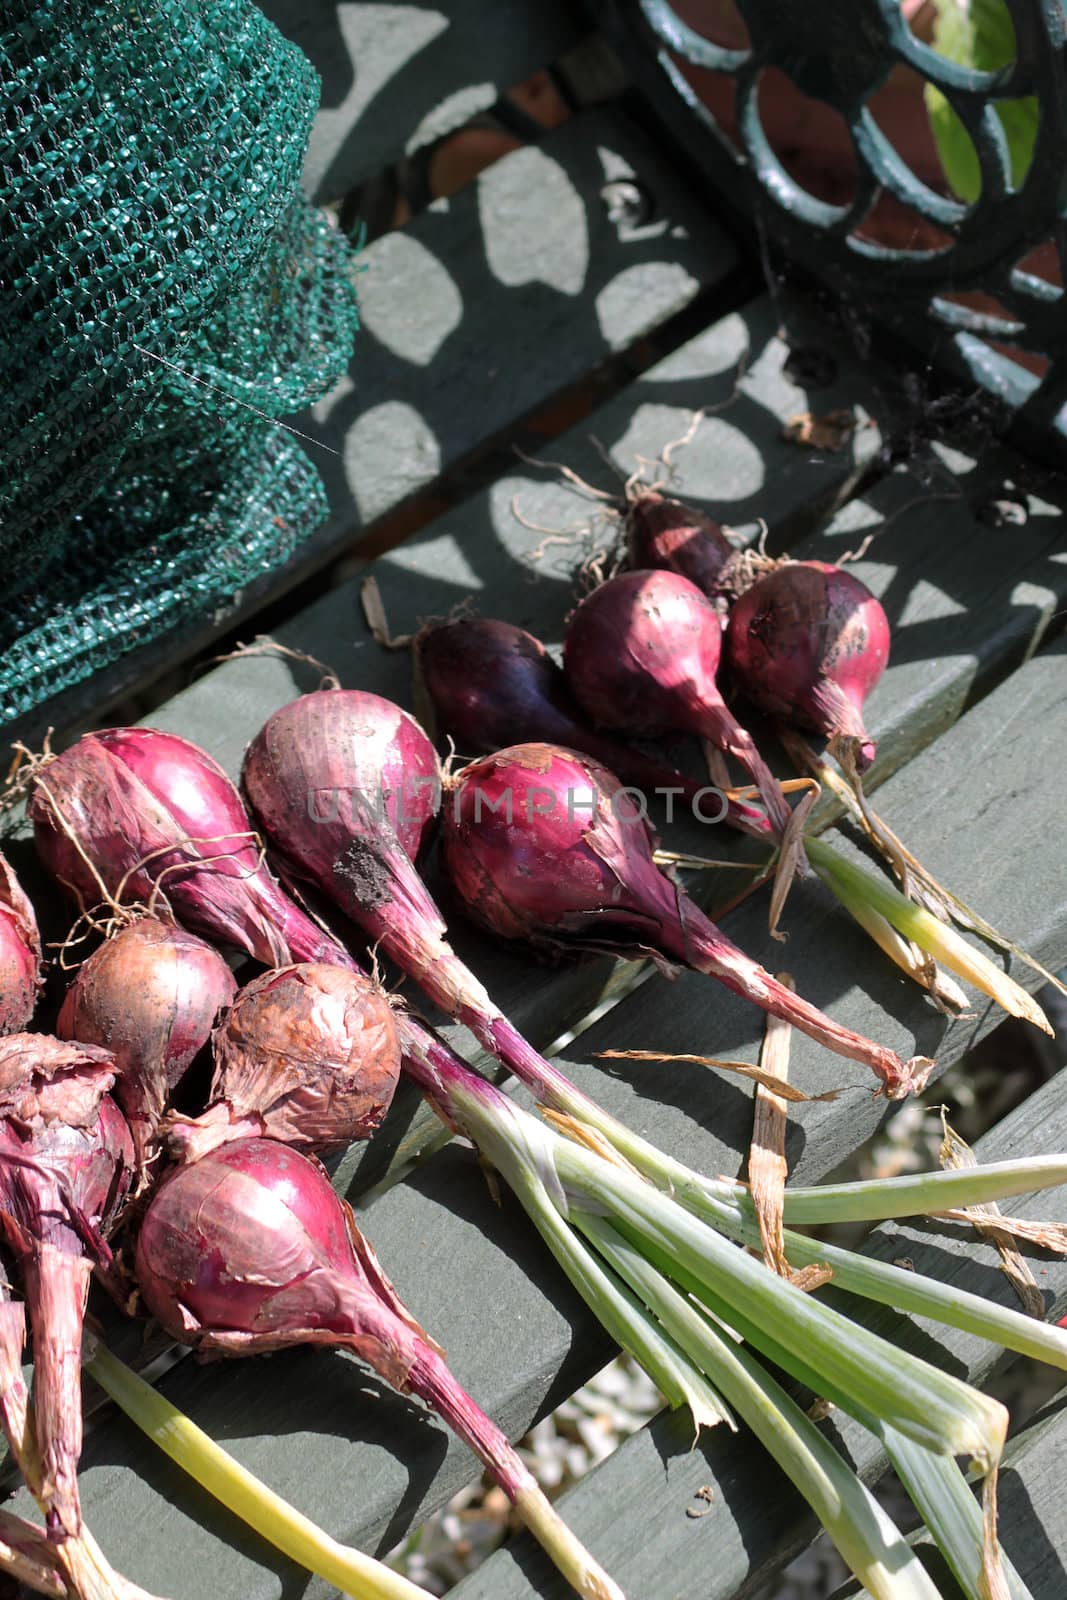 Onions by naffarts2